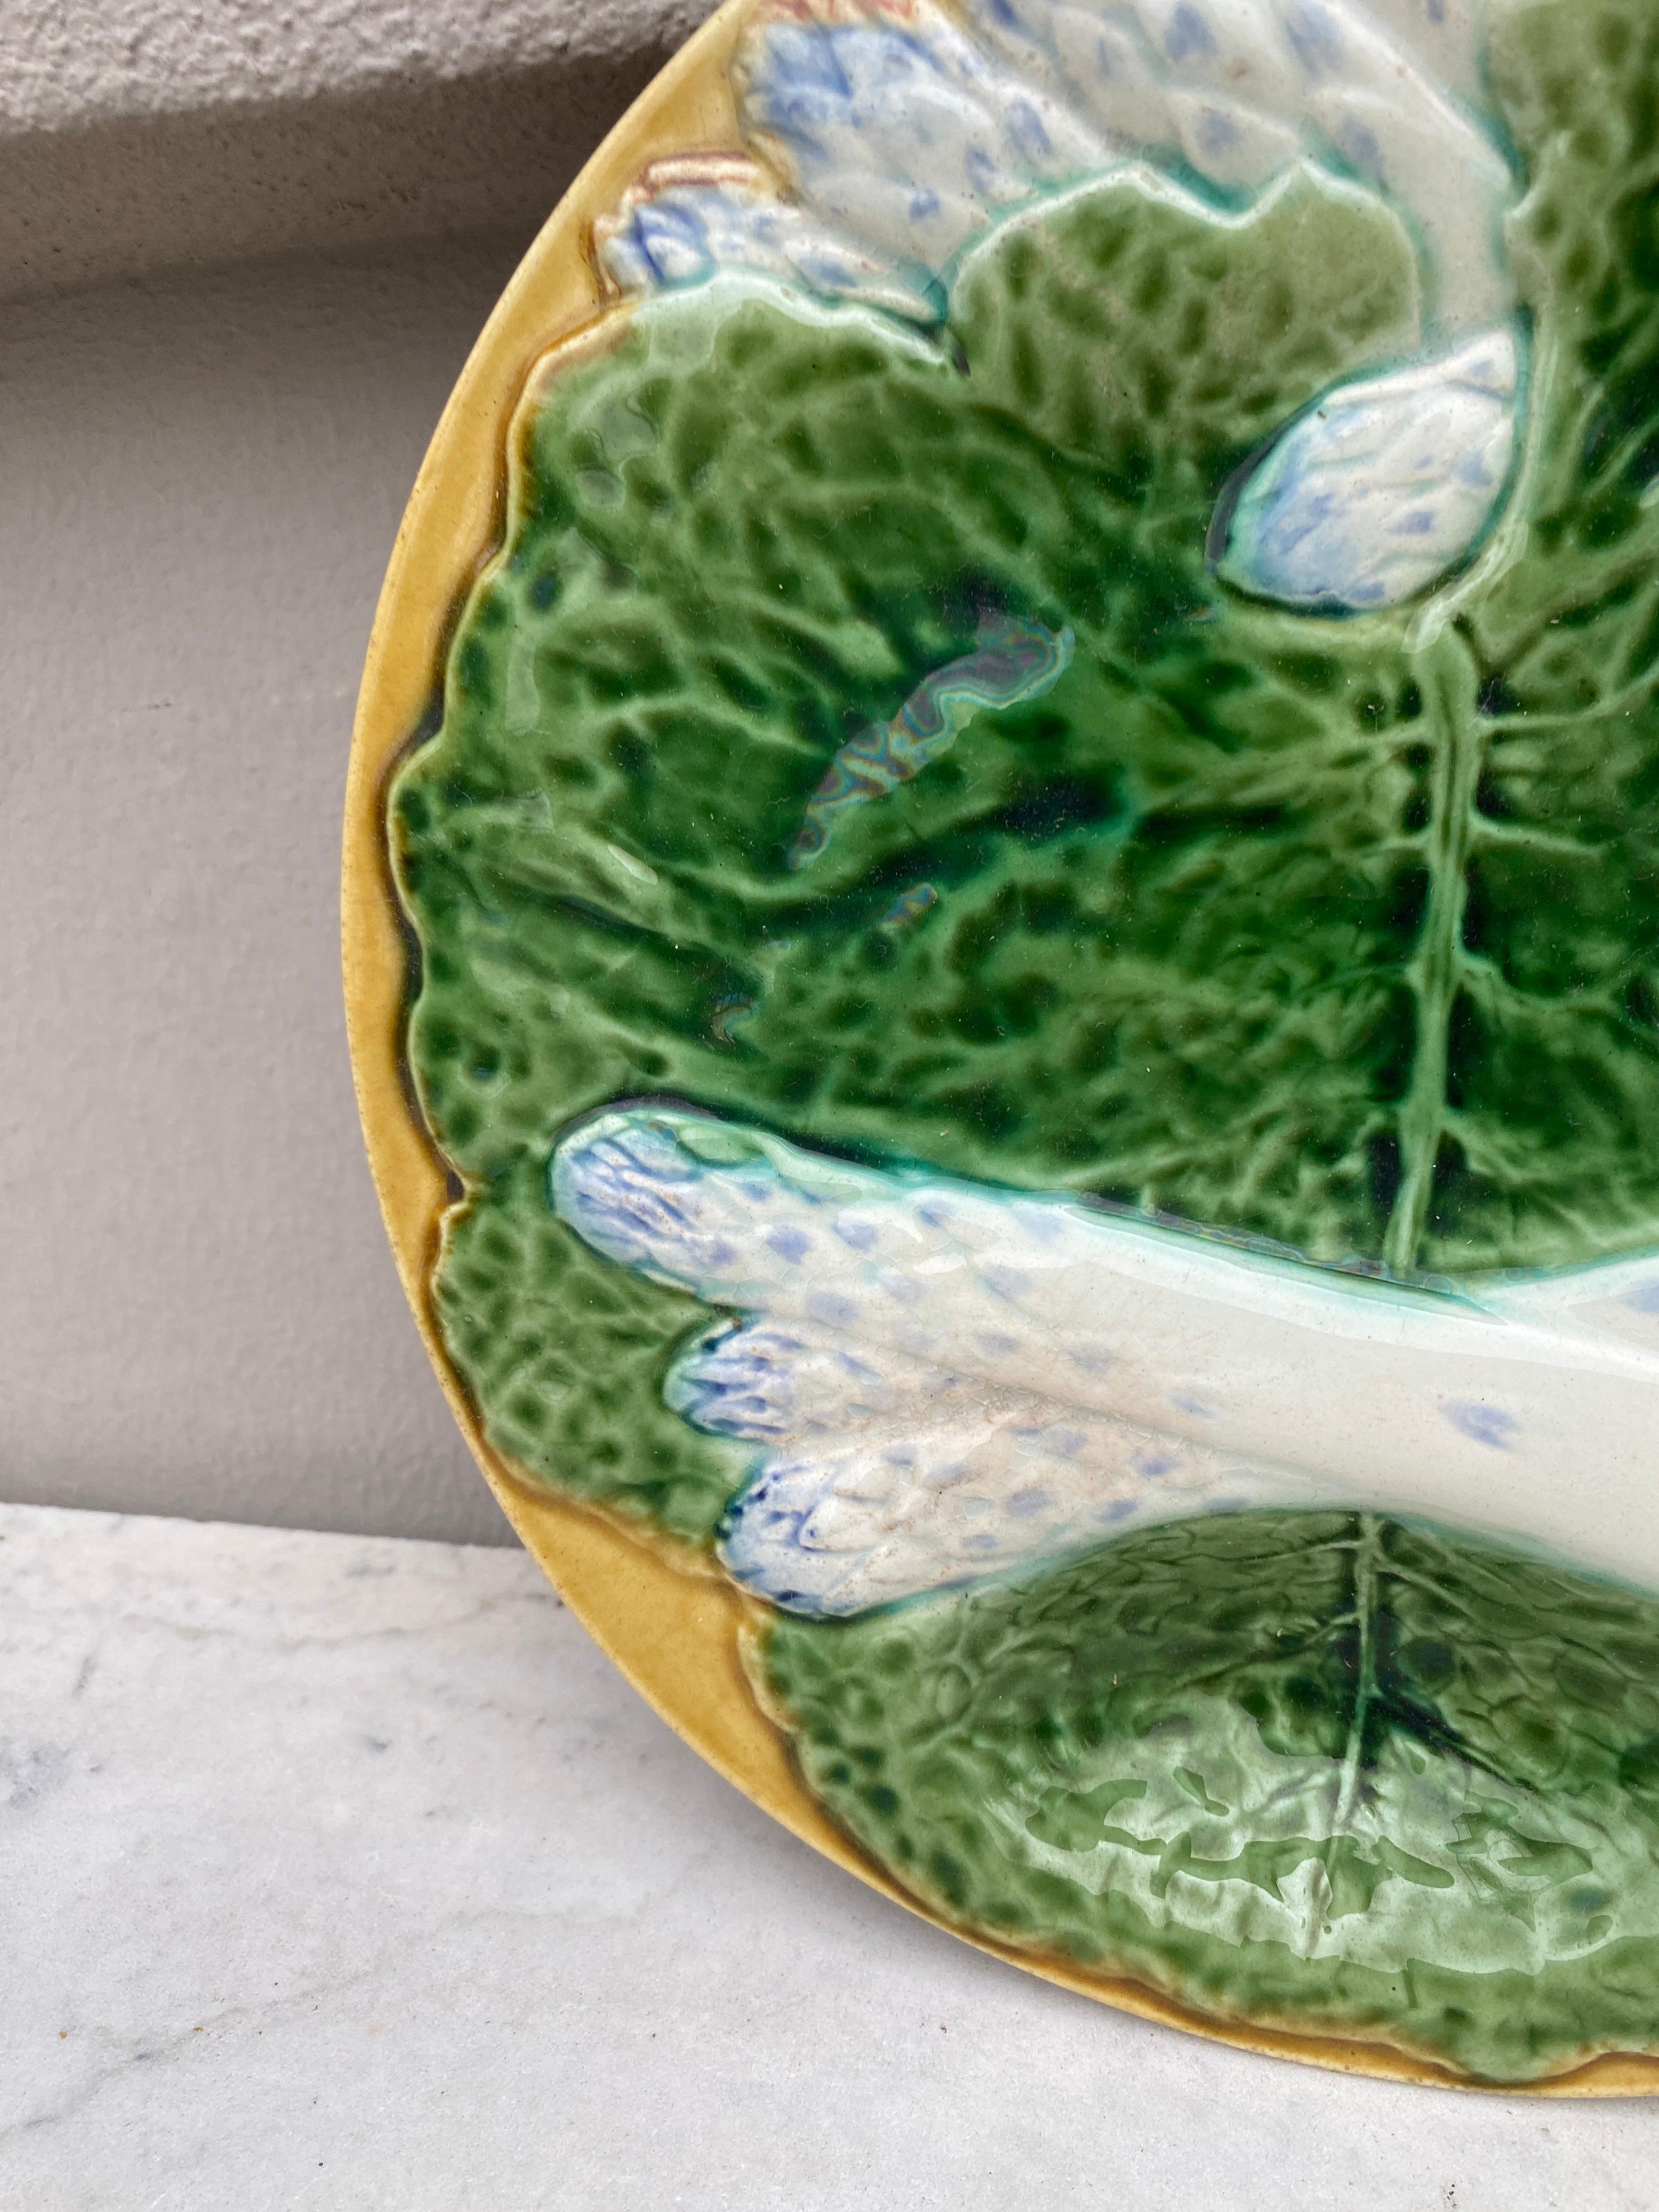 Inhabituelles assiettes à asperges en majolique du 19ème siècle avec de grandes feuilles de choux vertes sur fond jaune (habituellement sur fond bleu), assiettes très colorées réalisées par la Manufacture de Creil et Montereau.
Cette manufacture n'a